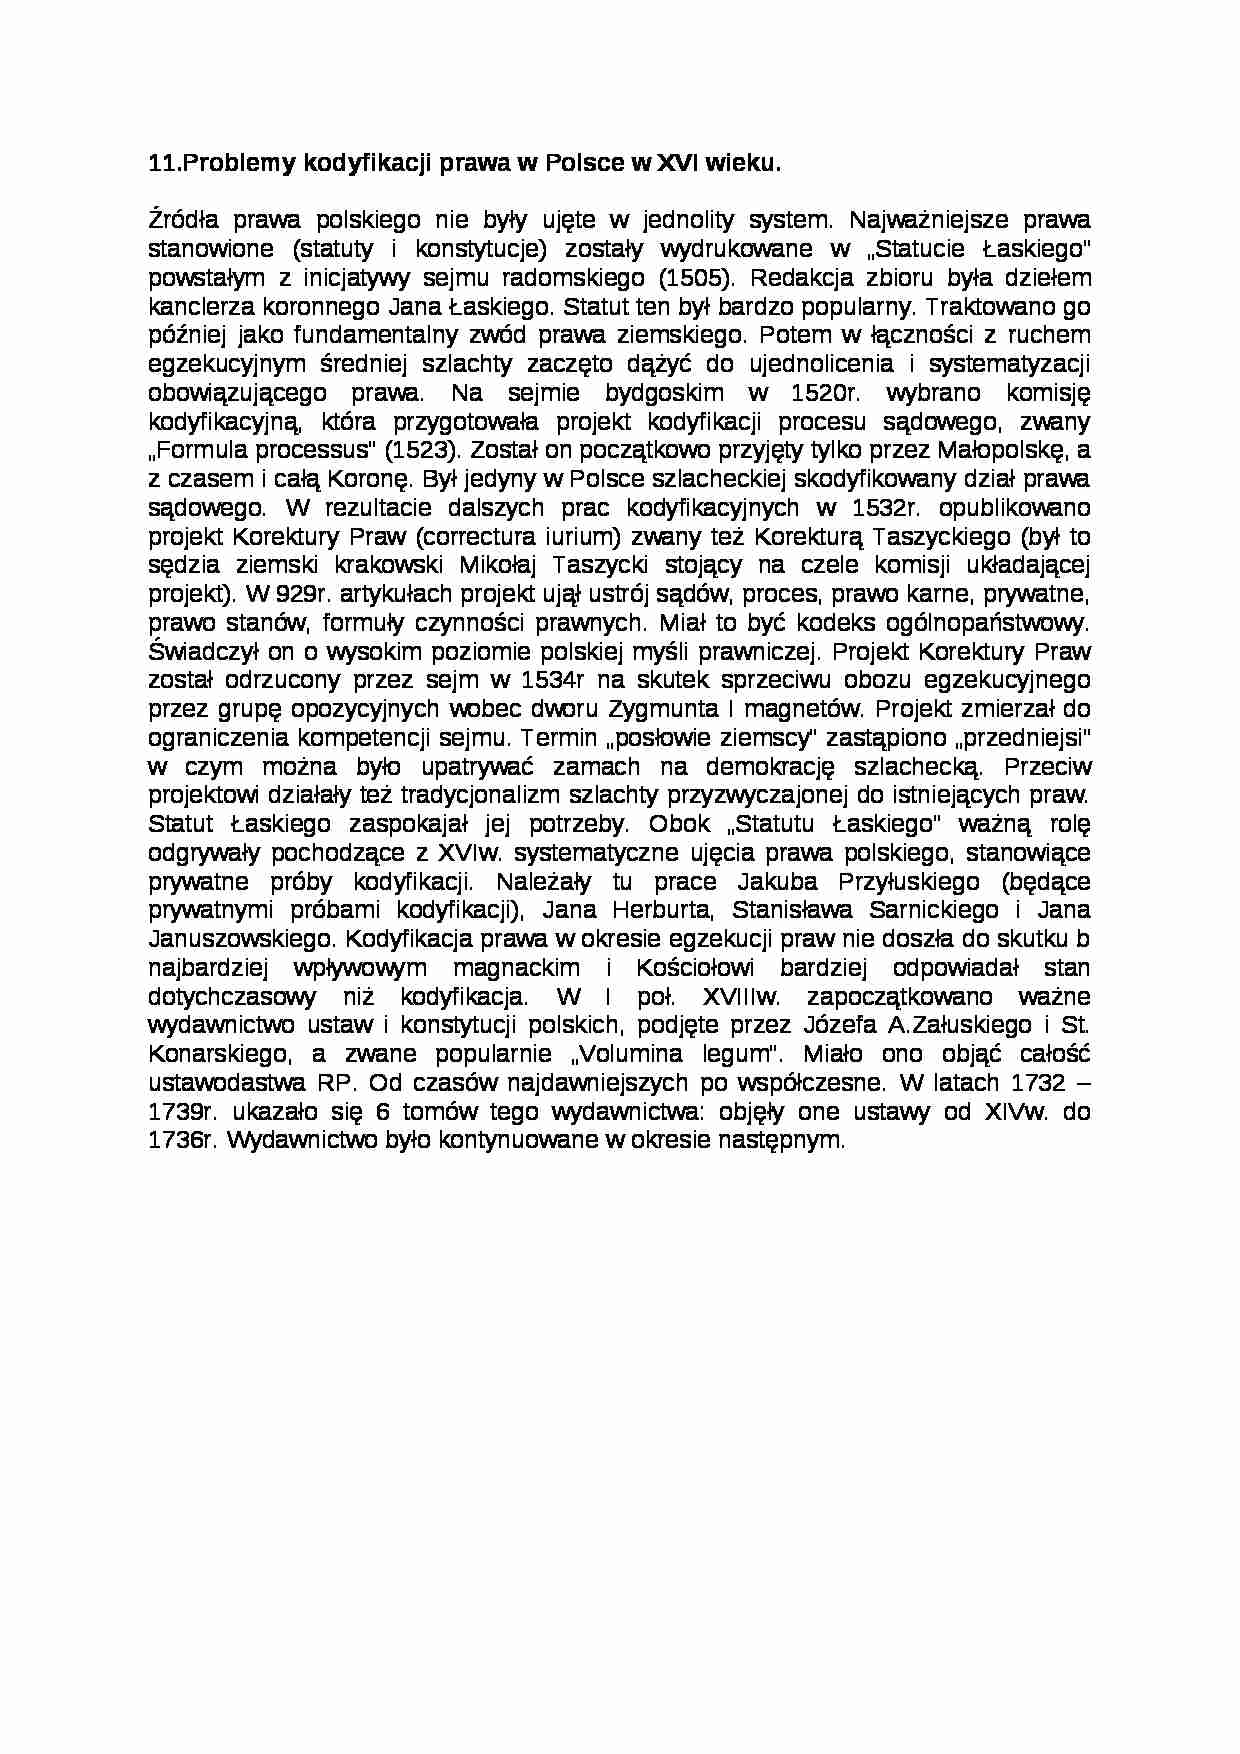 Problemy kodyfikacji prawa w Polsce w XVI wieku. - strona 1